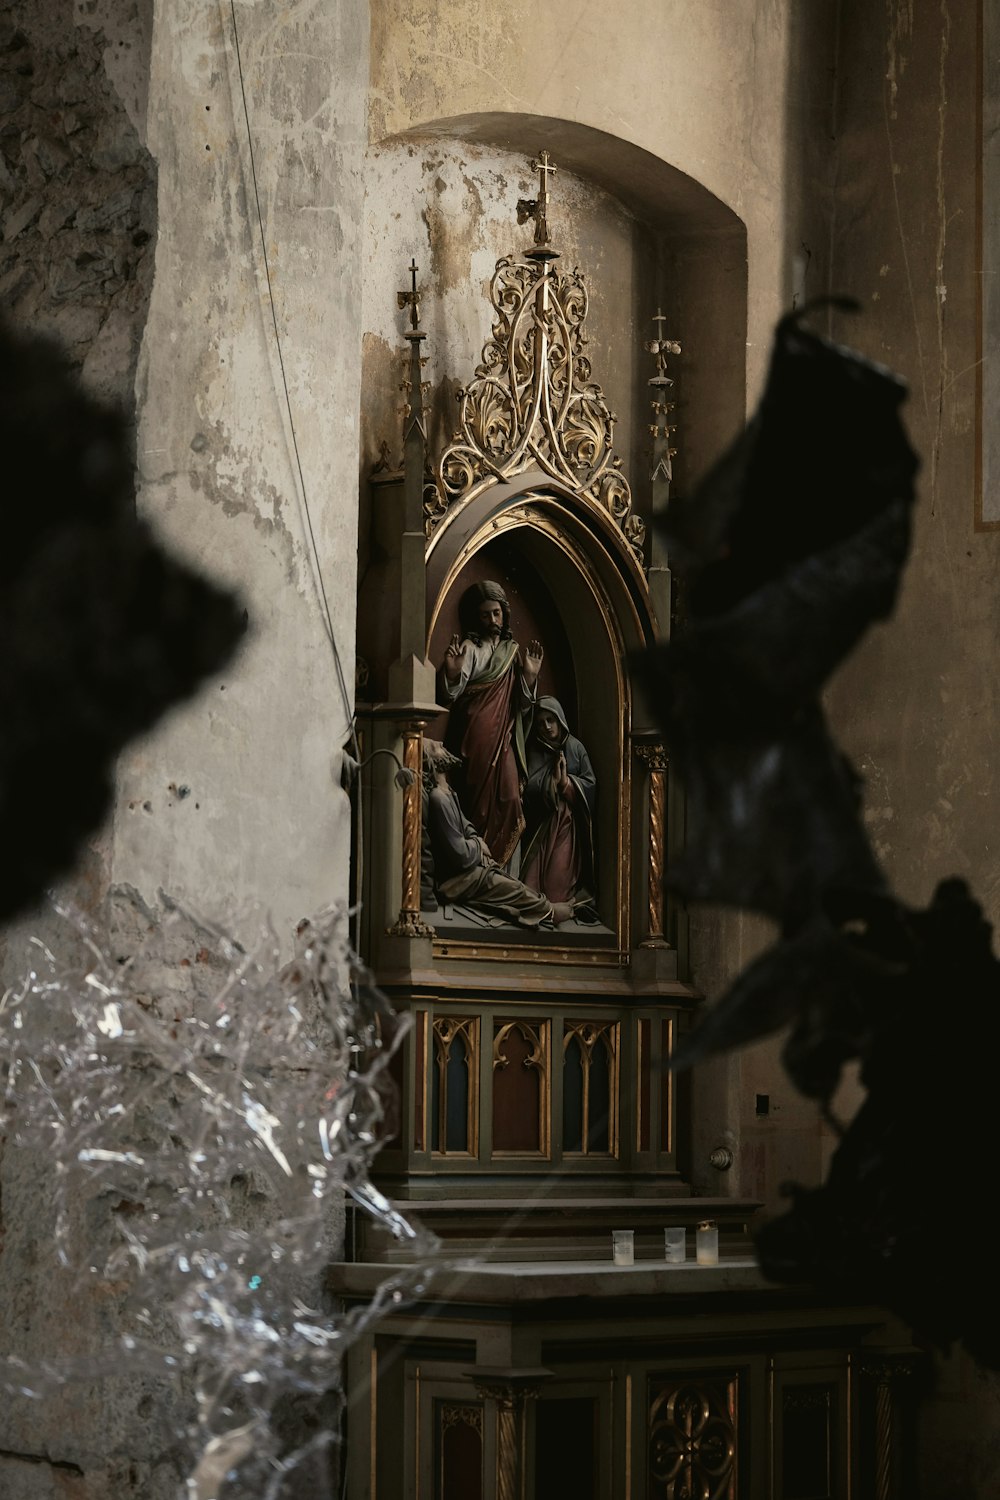 Une statue de Jésus dans une église avec du verre brisé